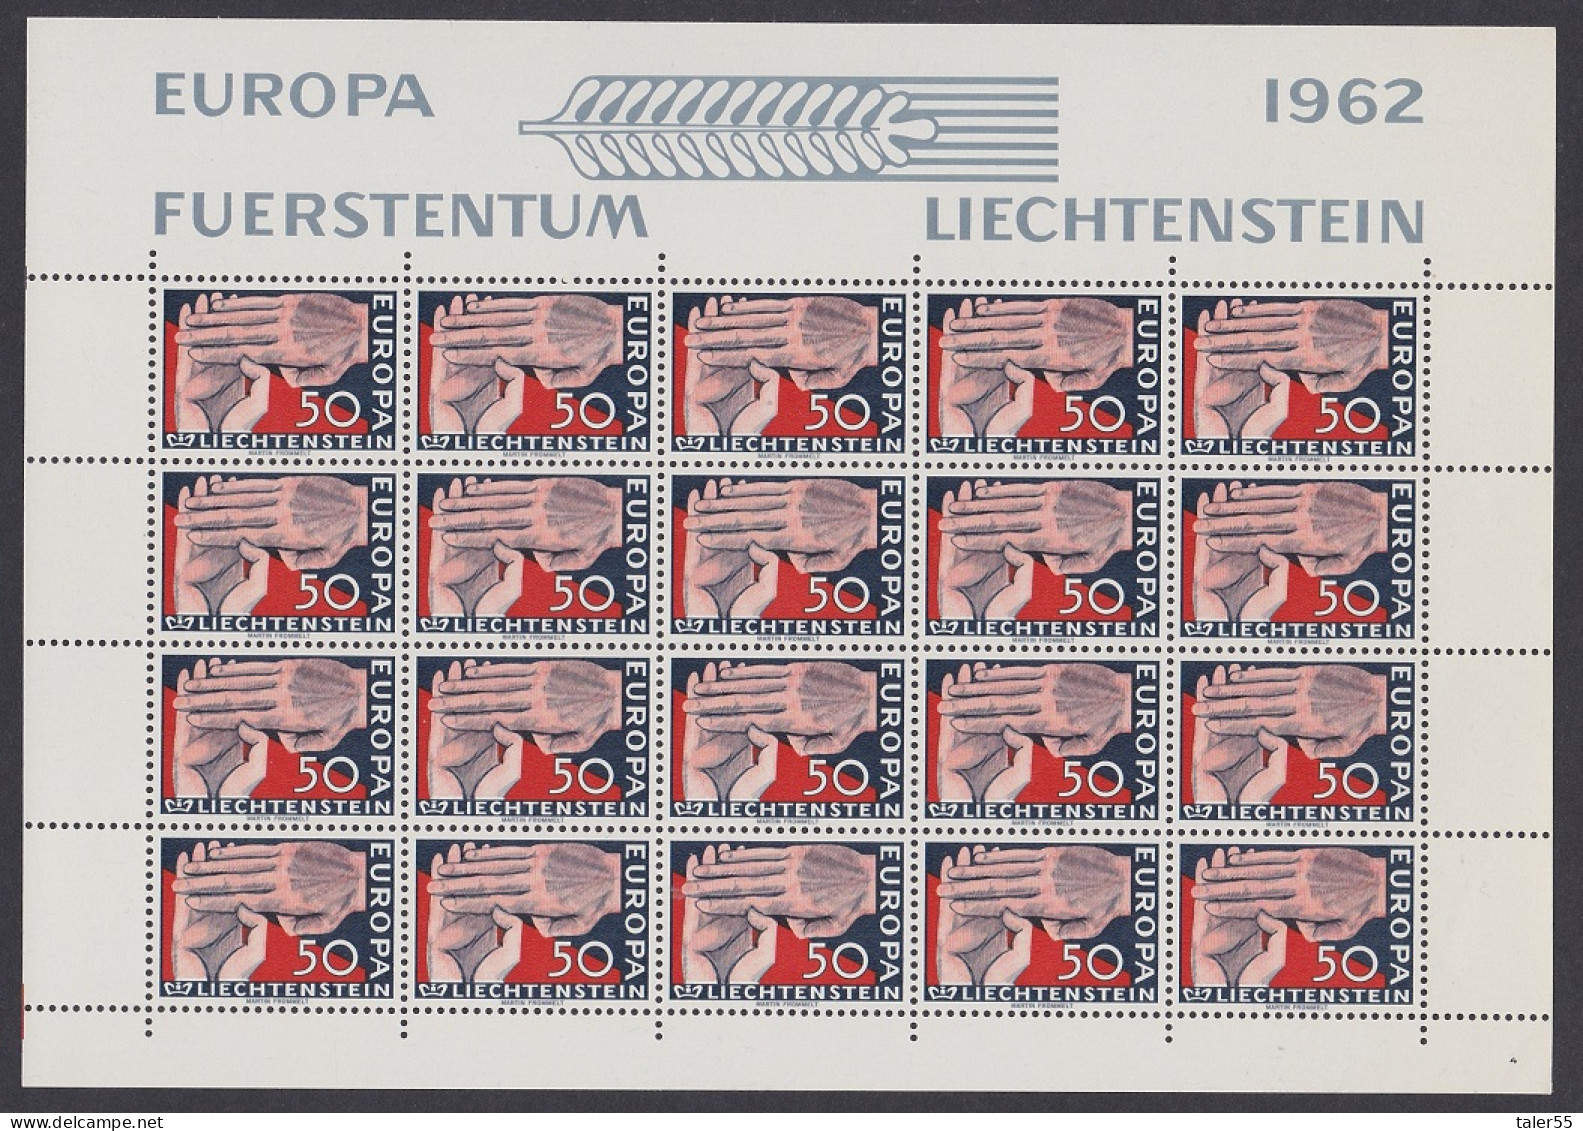 Liechtenstein Clasped Hands Europa 1c Full Sheet 1962 MNH SG#413 Sc#370 - Ongebruikt